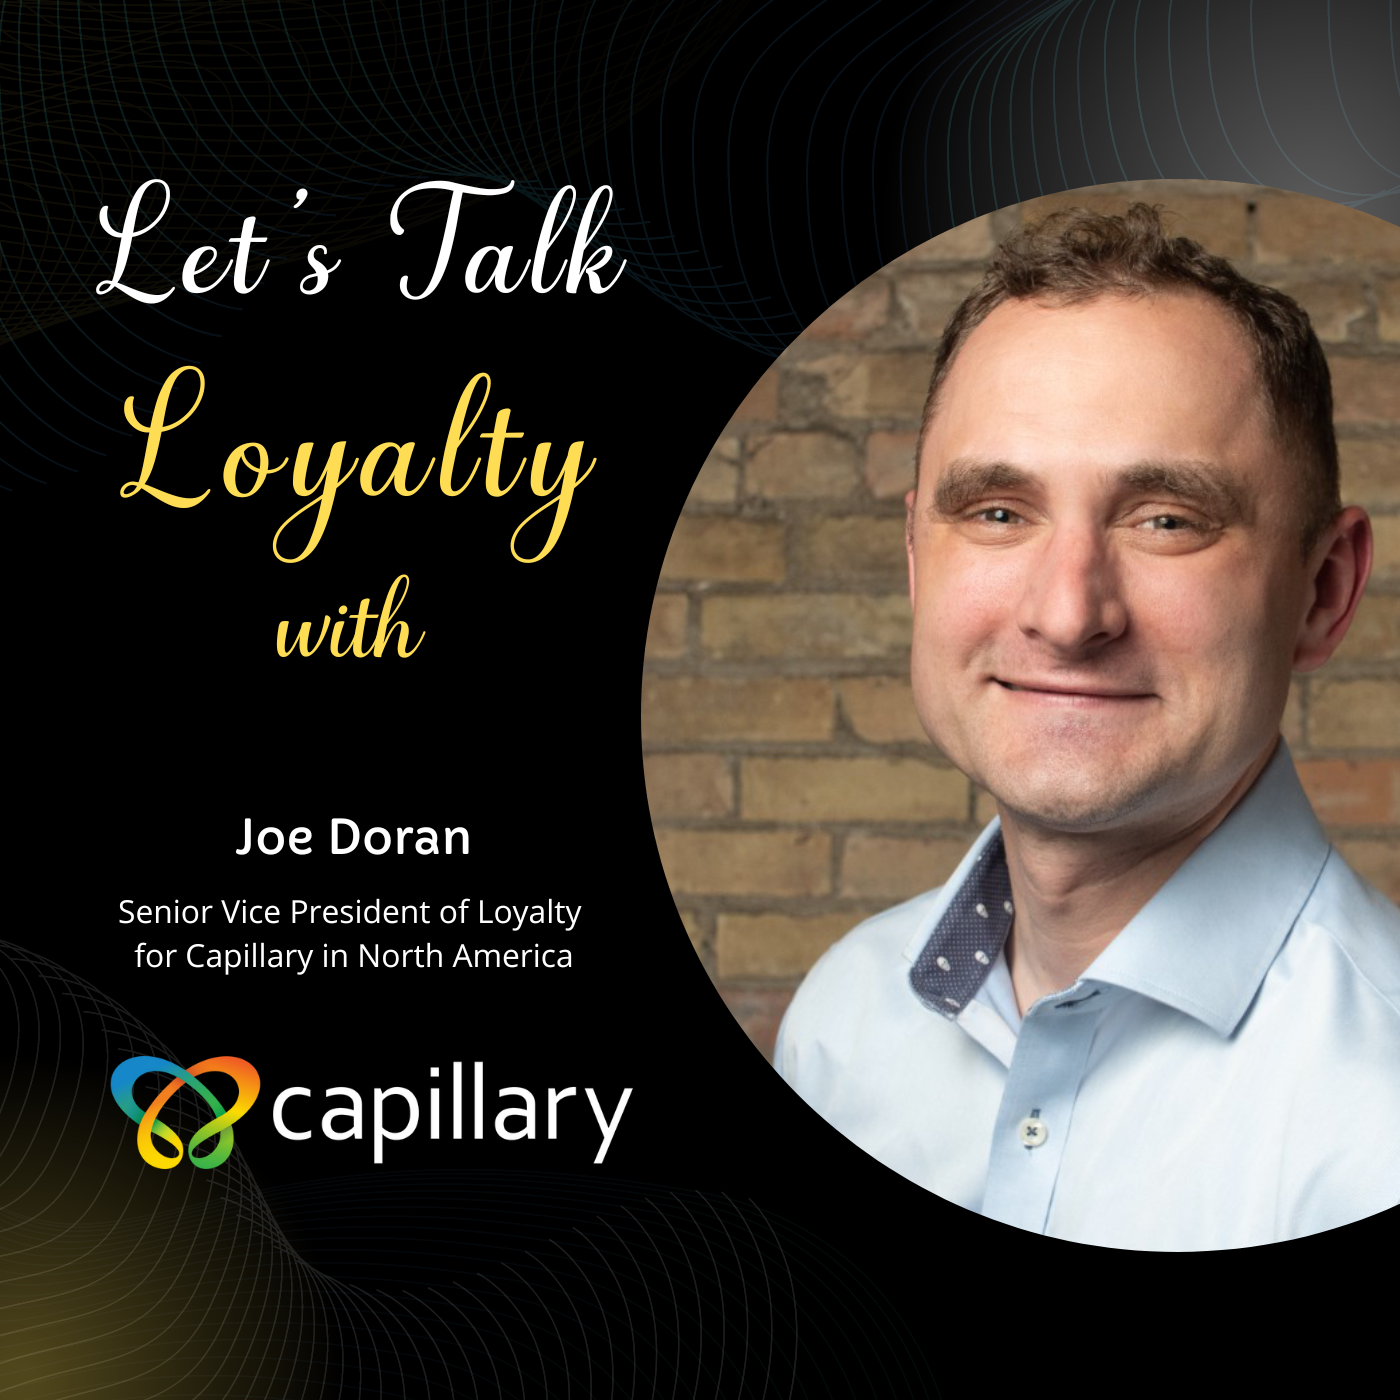 Capillary – Joe Doran